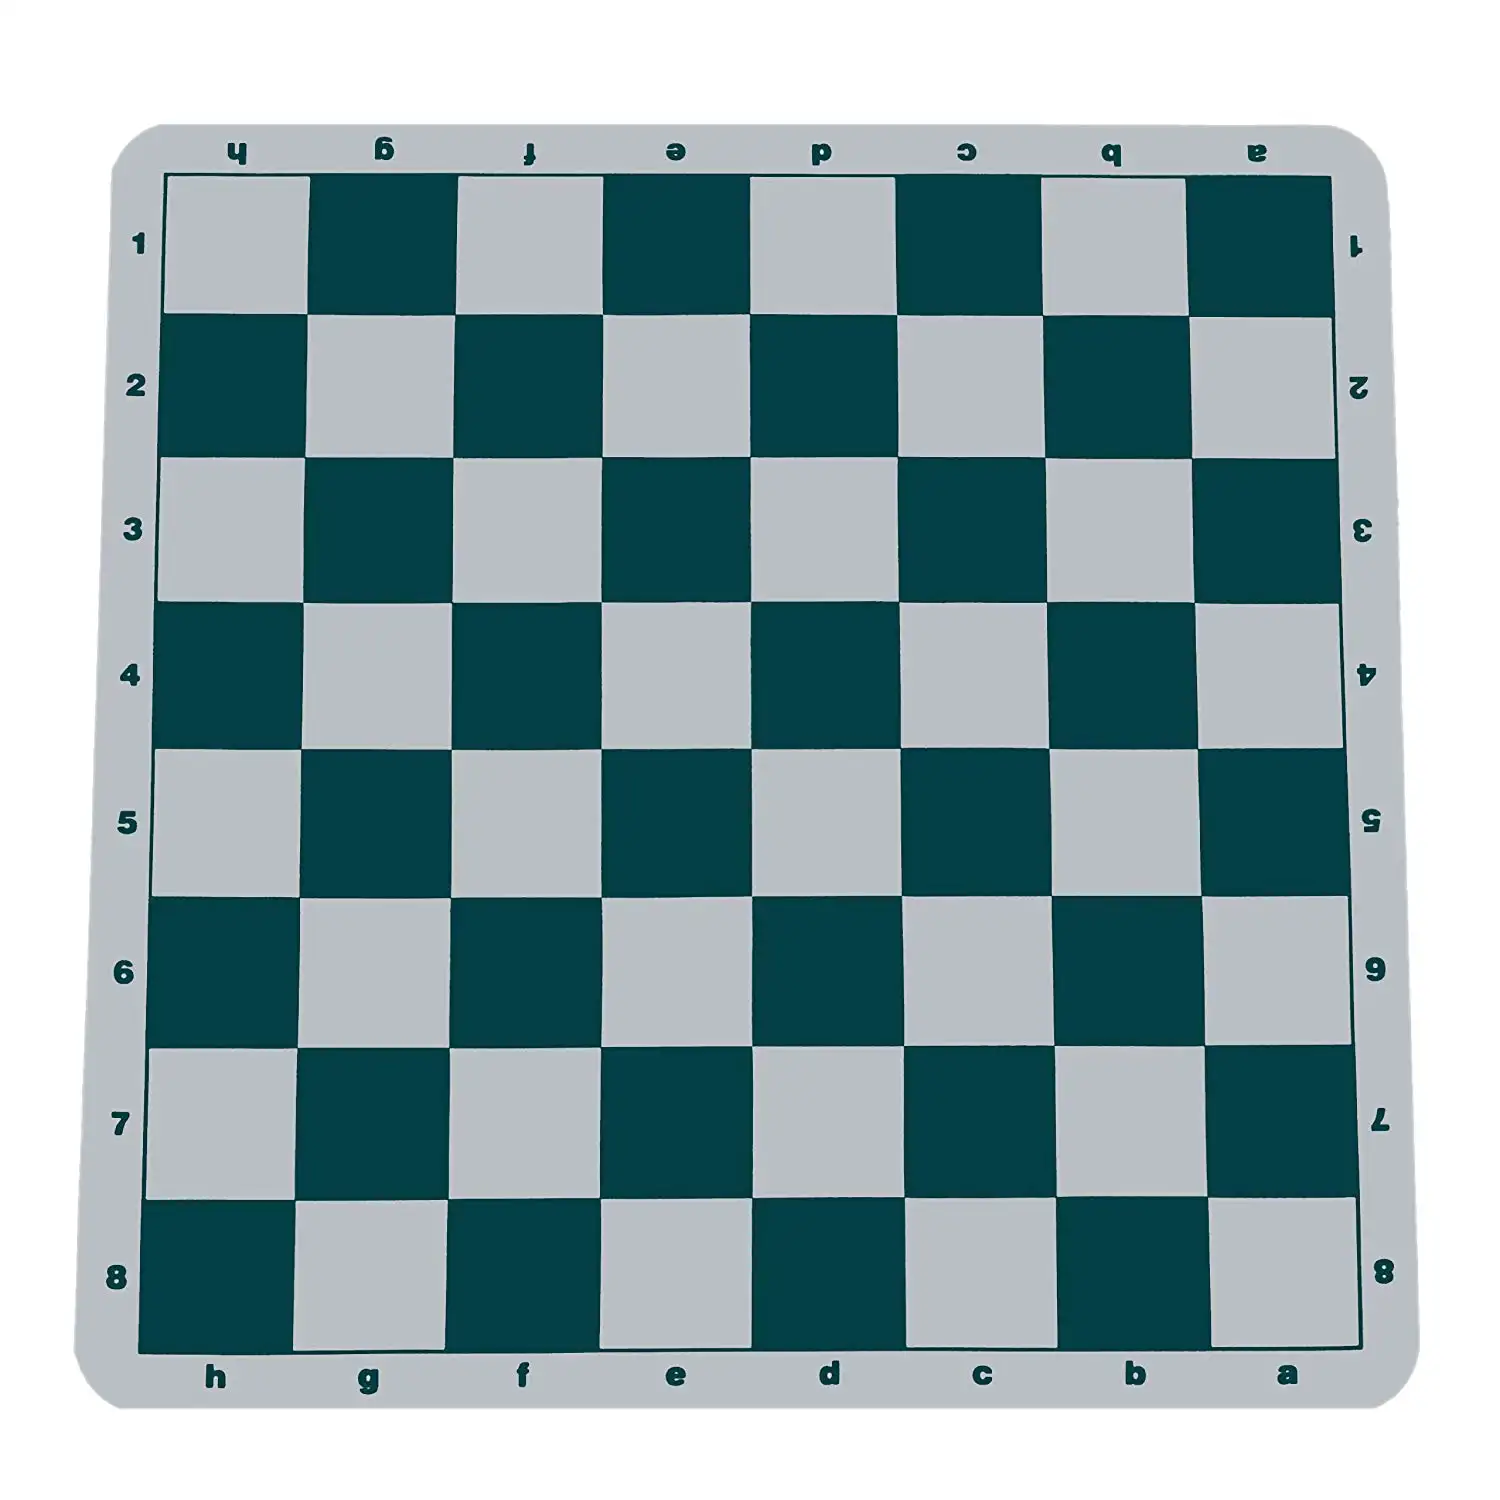 Roll up toernooi schaken demonstratie board set game zachte siliconen rubber schaakbord